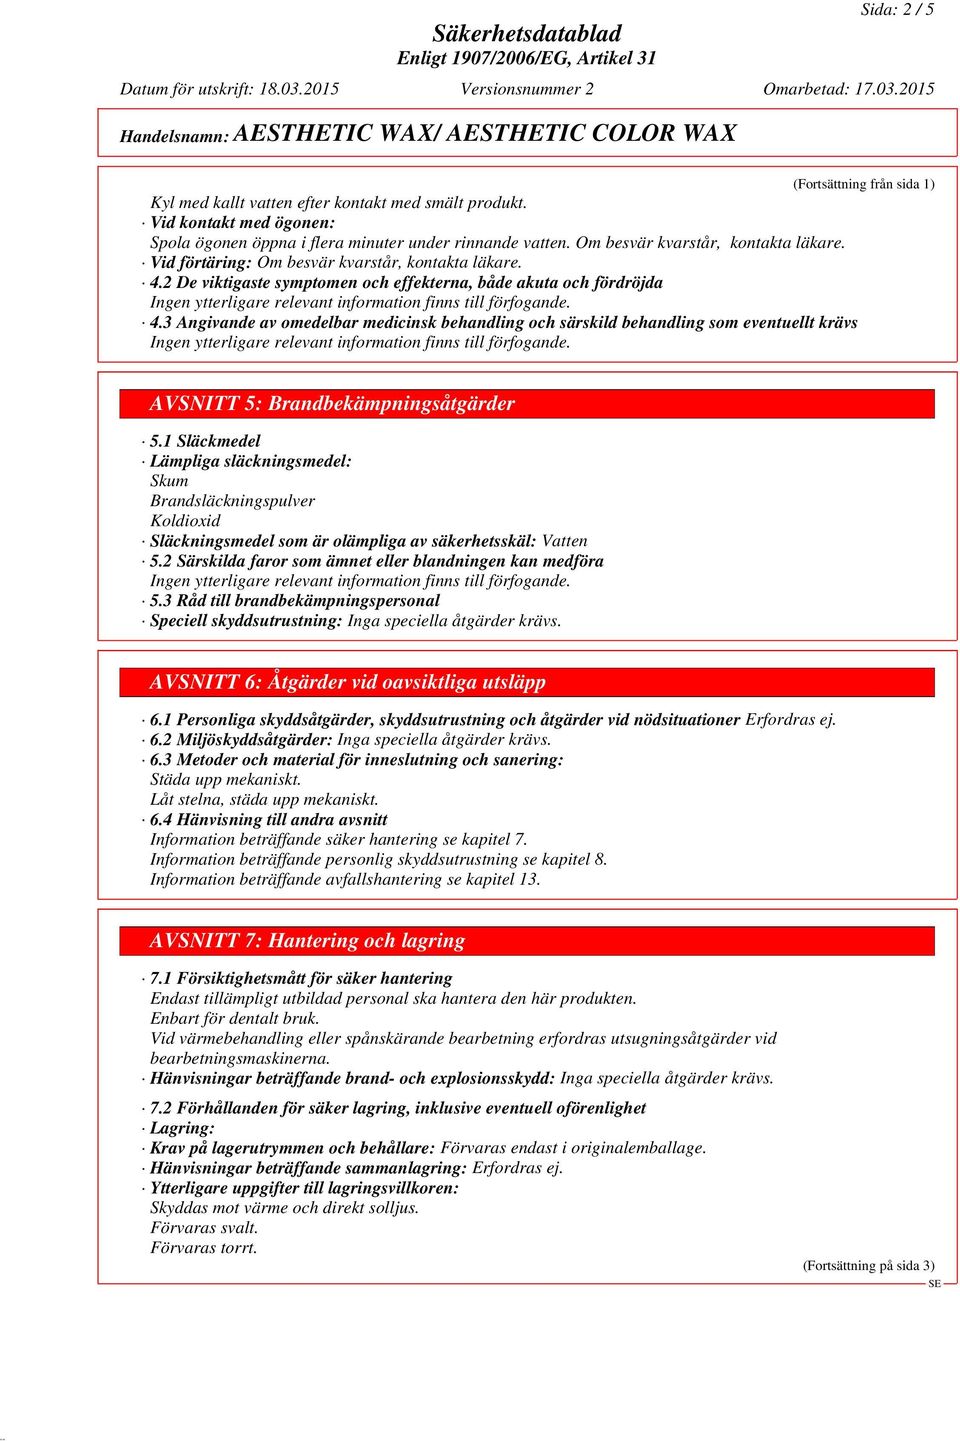 3 Angivande av omedelbar medicinsk behandling och särskild behandling som eventuellt krävs (Fortsättning från sida 1) AVSNITT 5: Brandbekämpningsåtgärder 5.